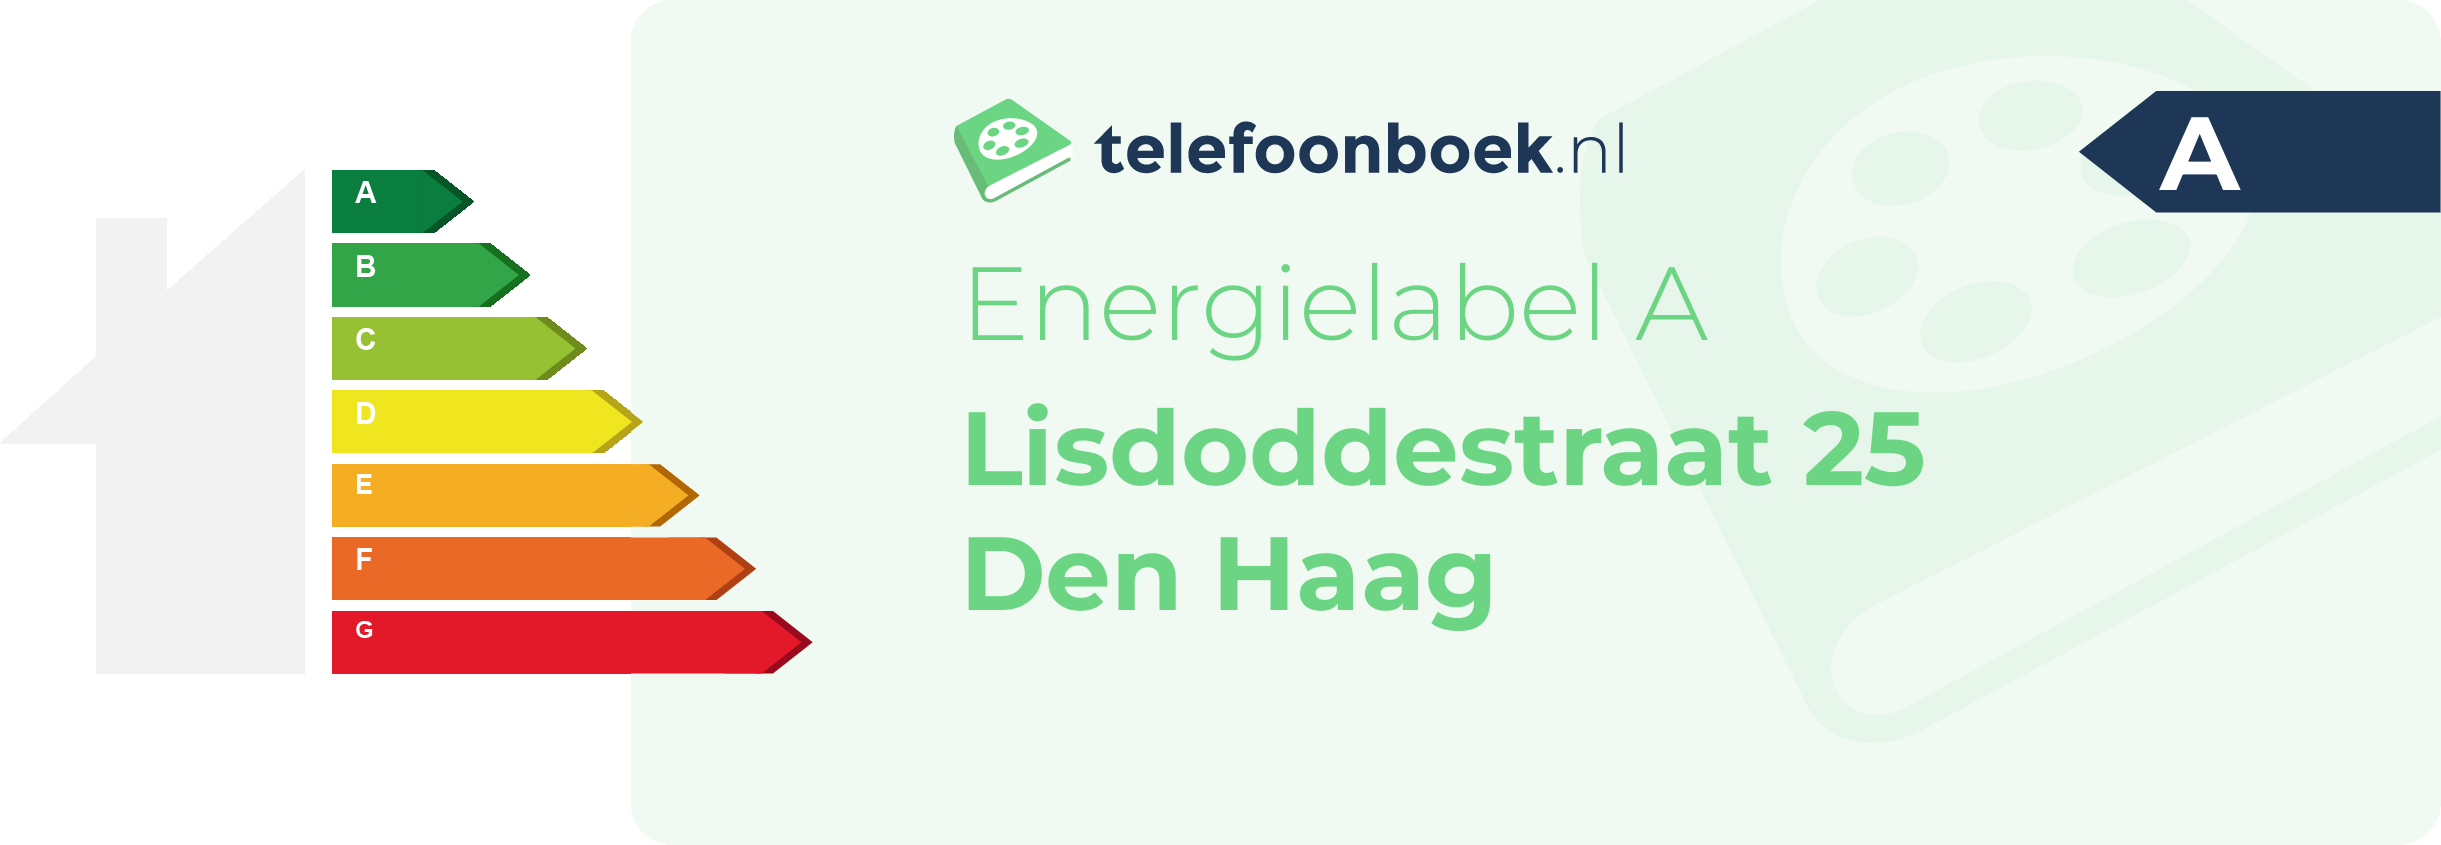 Energielabel Lisdoddestraat 25 Den Haag